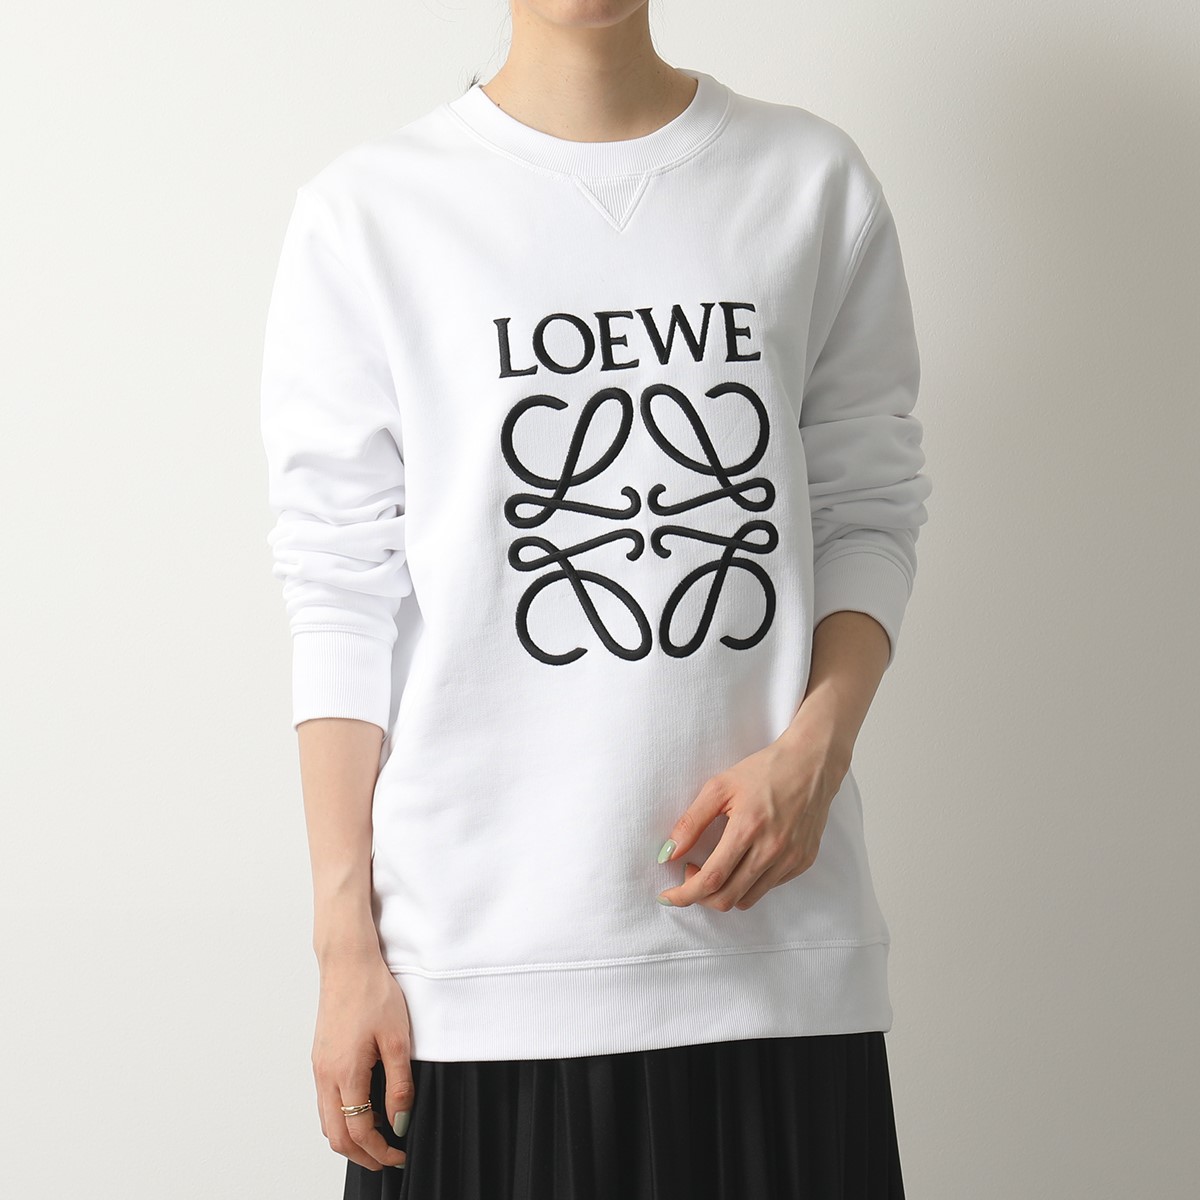 LOEWE ロエベ スウェット ロゴ 刺繍 当店一番人気